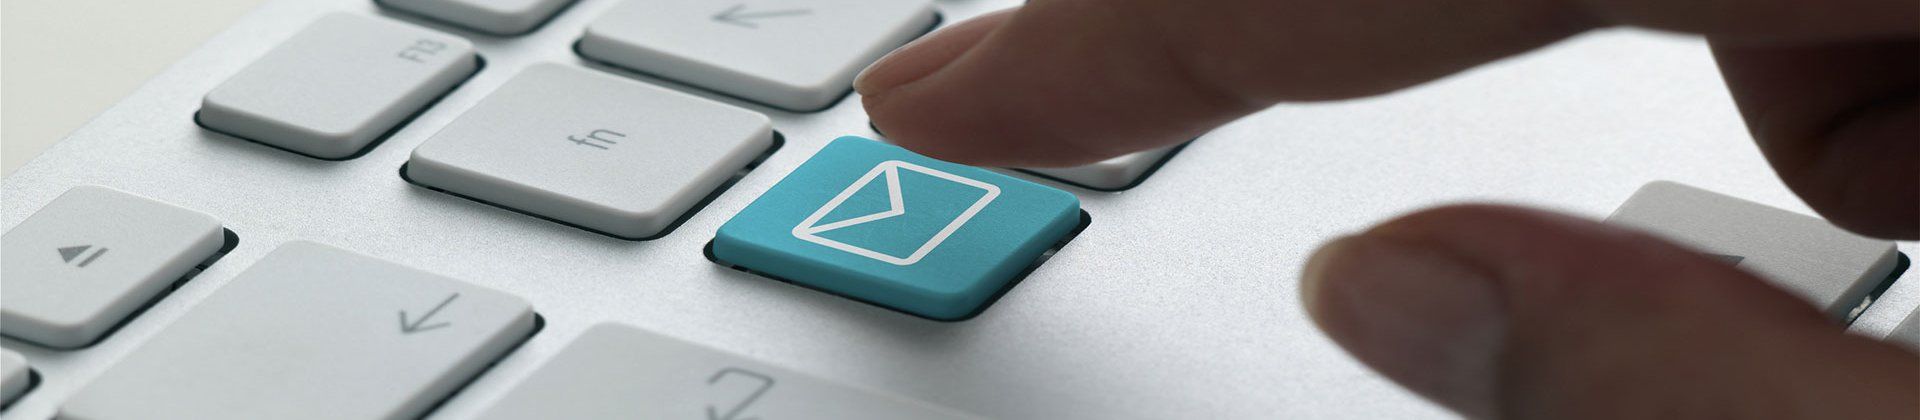 gros plan sur un clavier d'ordinateur blanc avec une touche email bleue